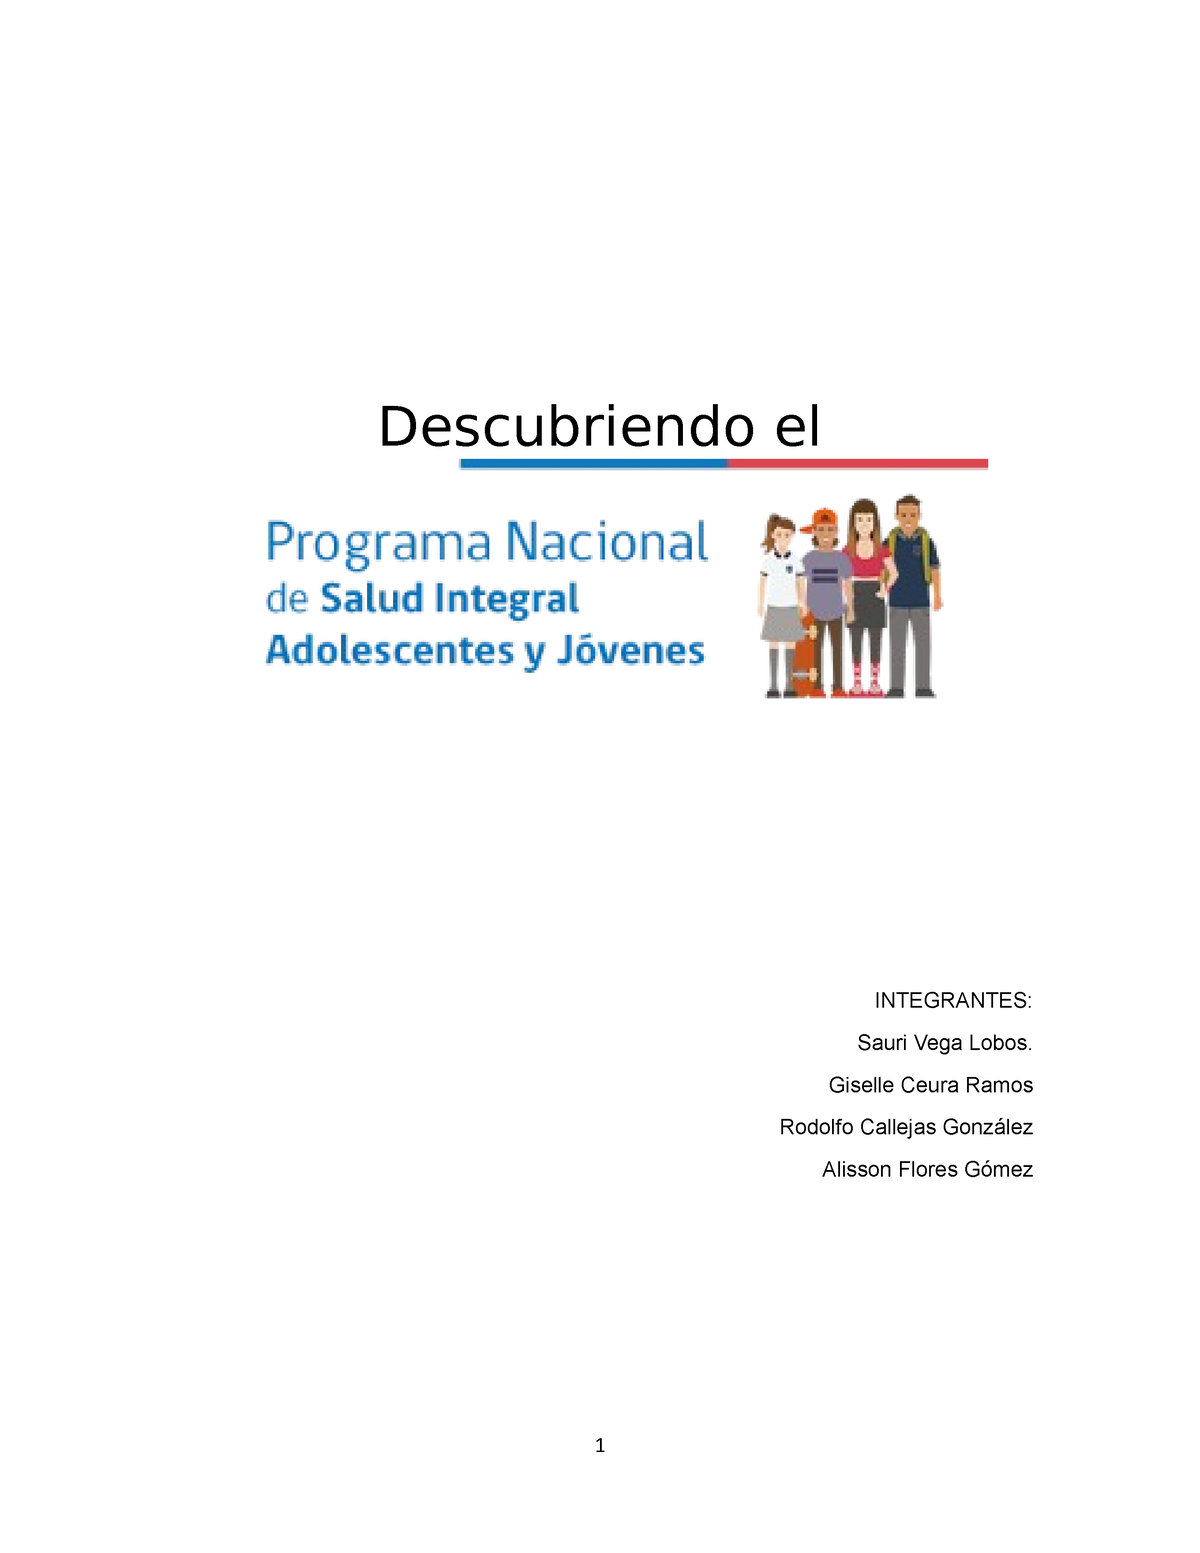 Programa De Salud Integral De Adolescentes Y Jóvenes Descubriendo El Integrantes Sauri Vega 8113